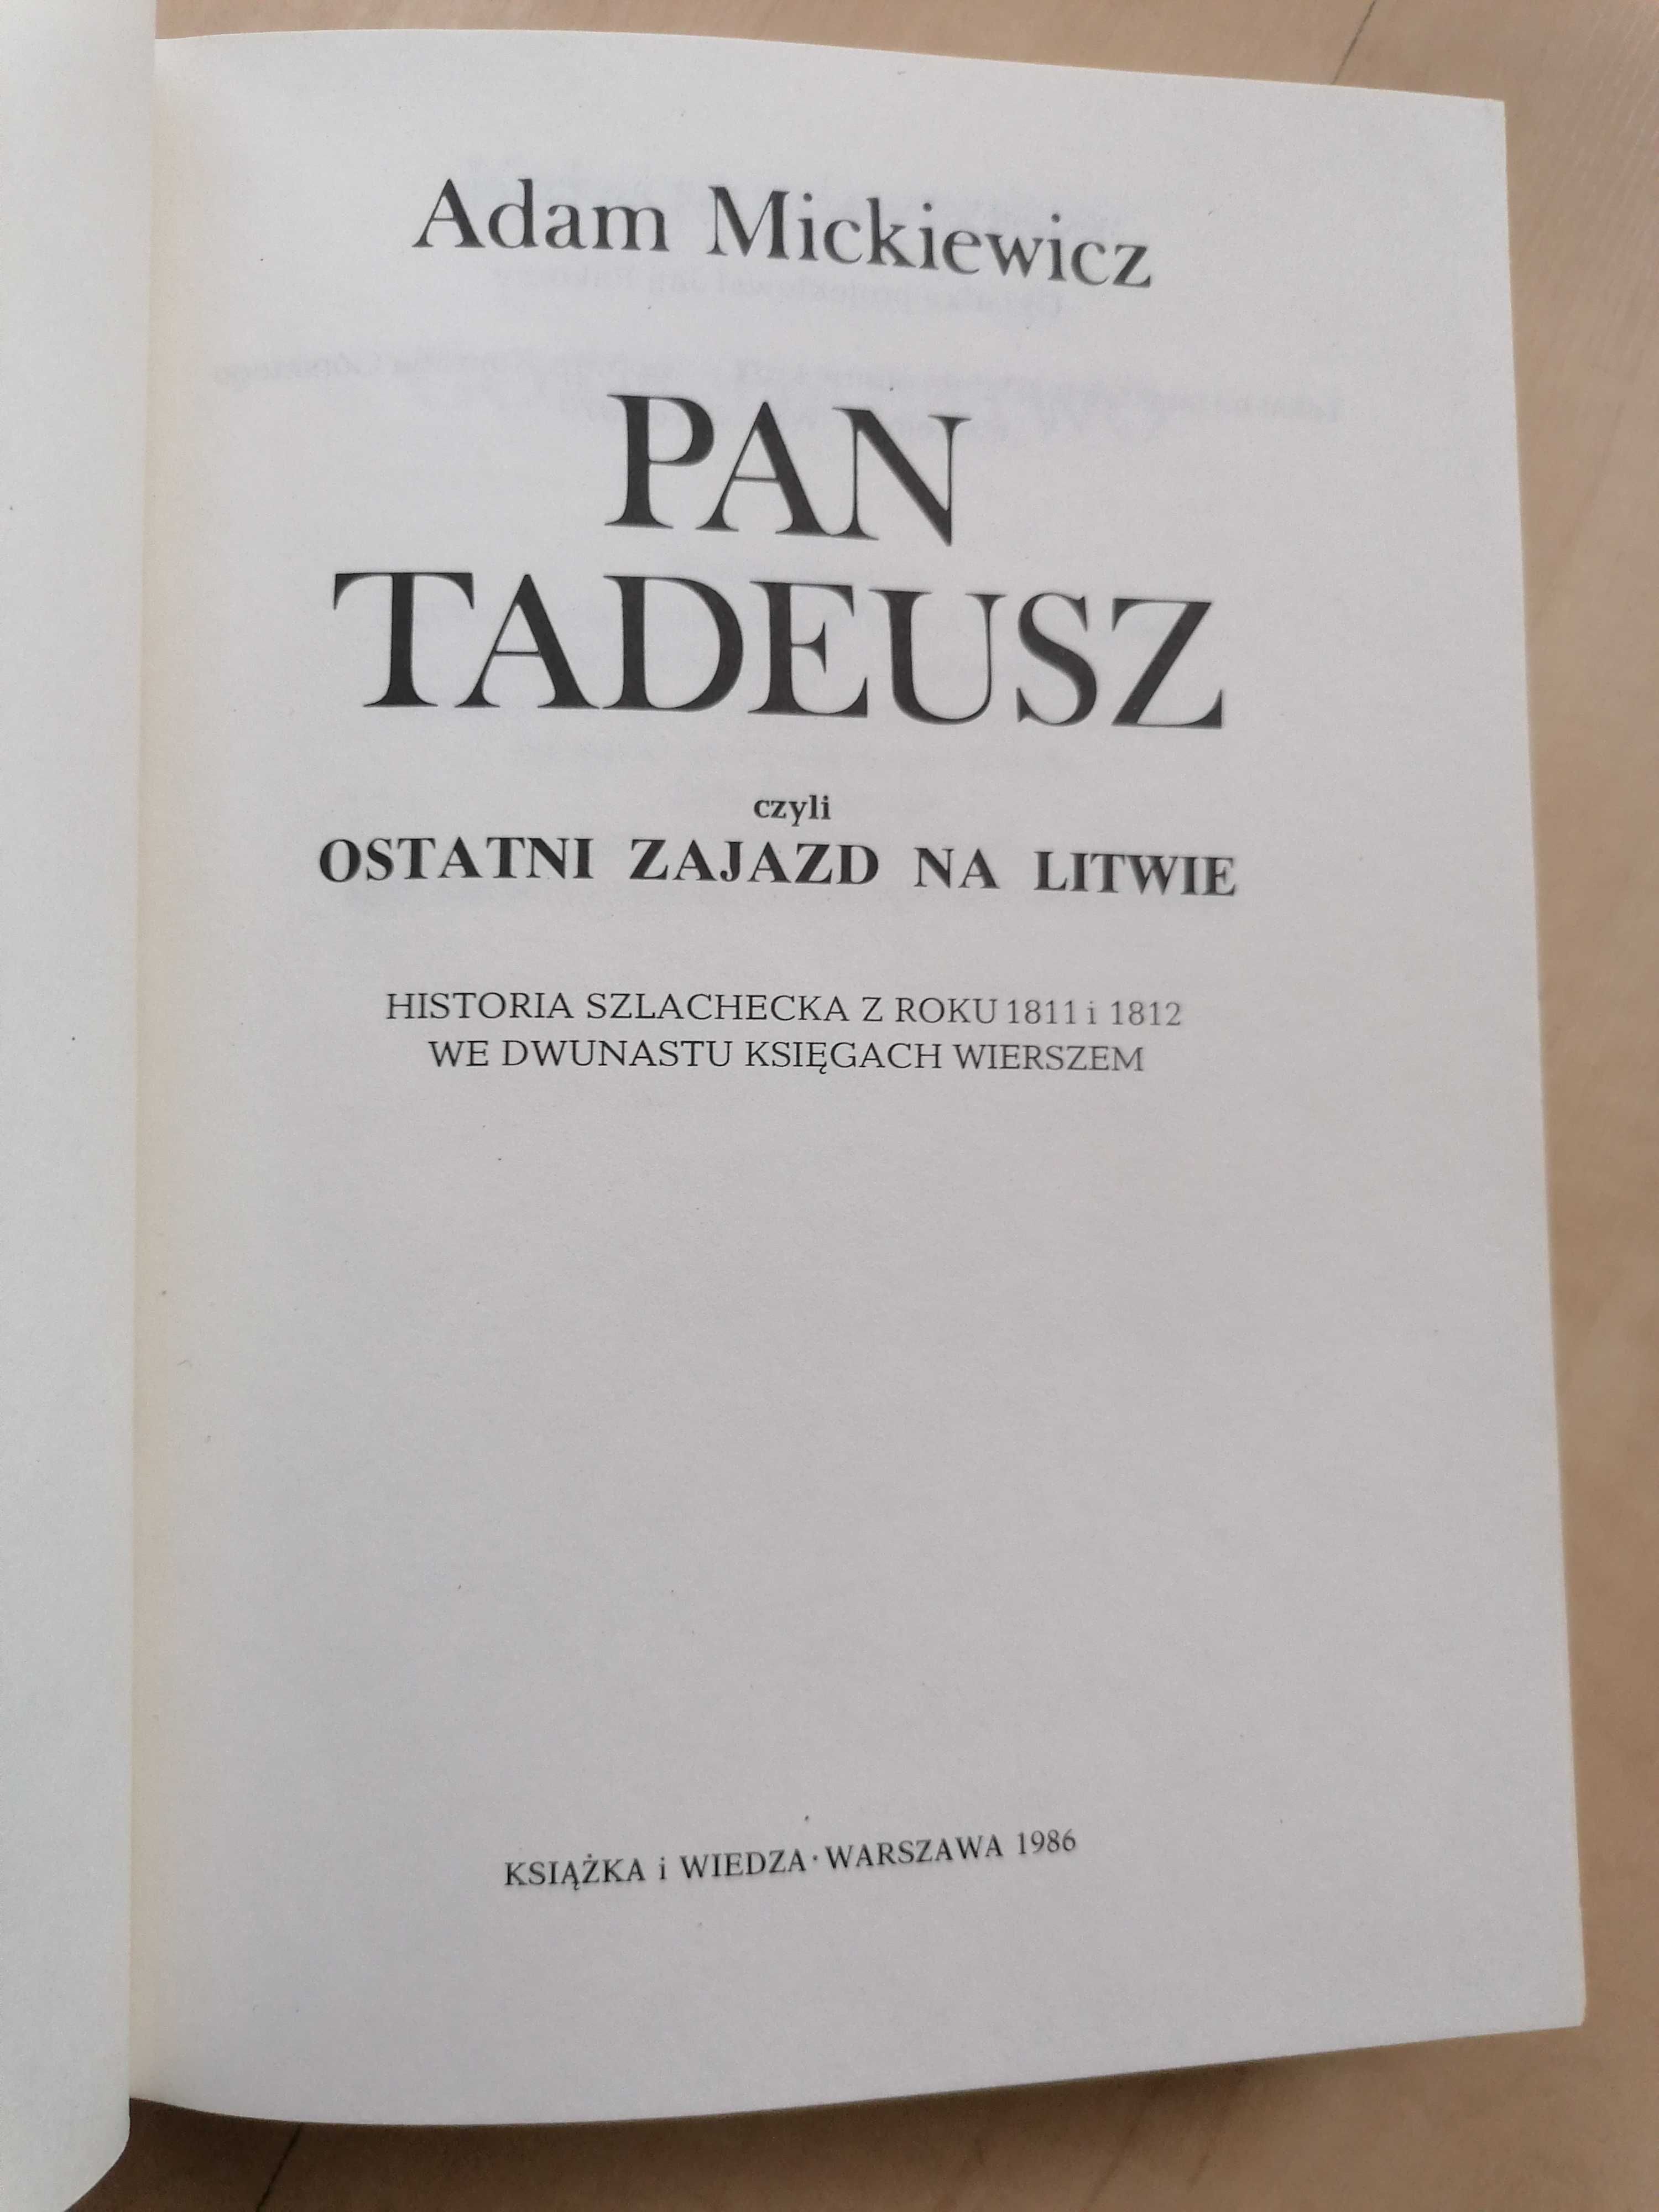 Adam Mickiewicz "Pan Tadeusz" rok 1986